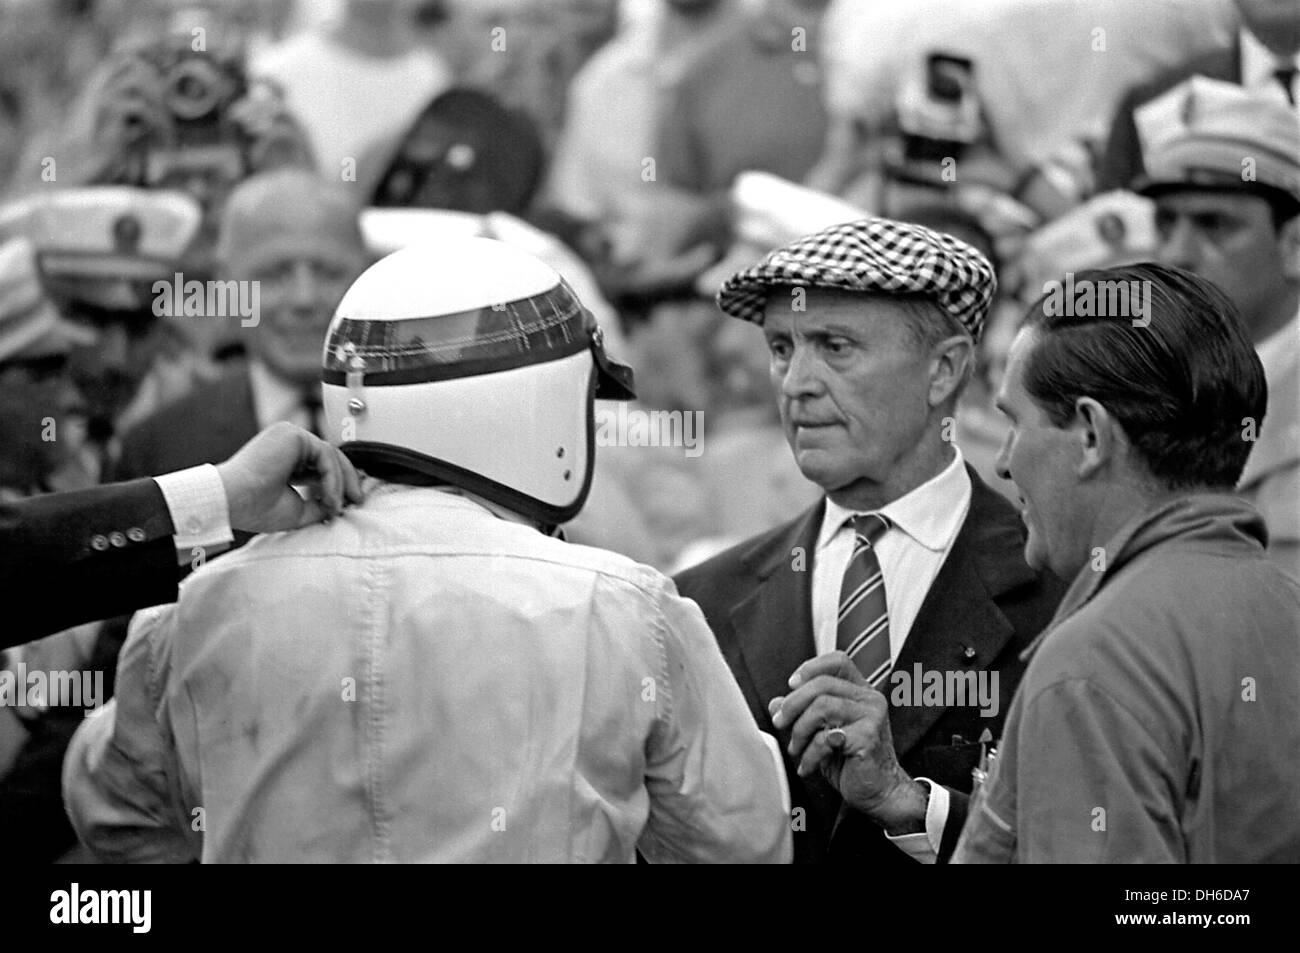 Stewart après avoir gagné dans une BRM, avec Louis Chiron - star d'avant-guerre qui ont géré le pilote d'après-guerre de course. Monaco GP 22 mai 1966. Banque D'Images